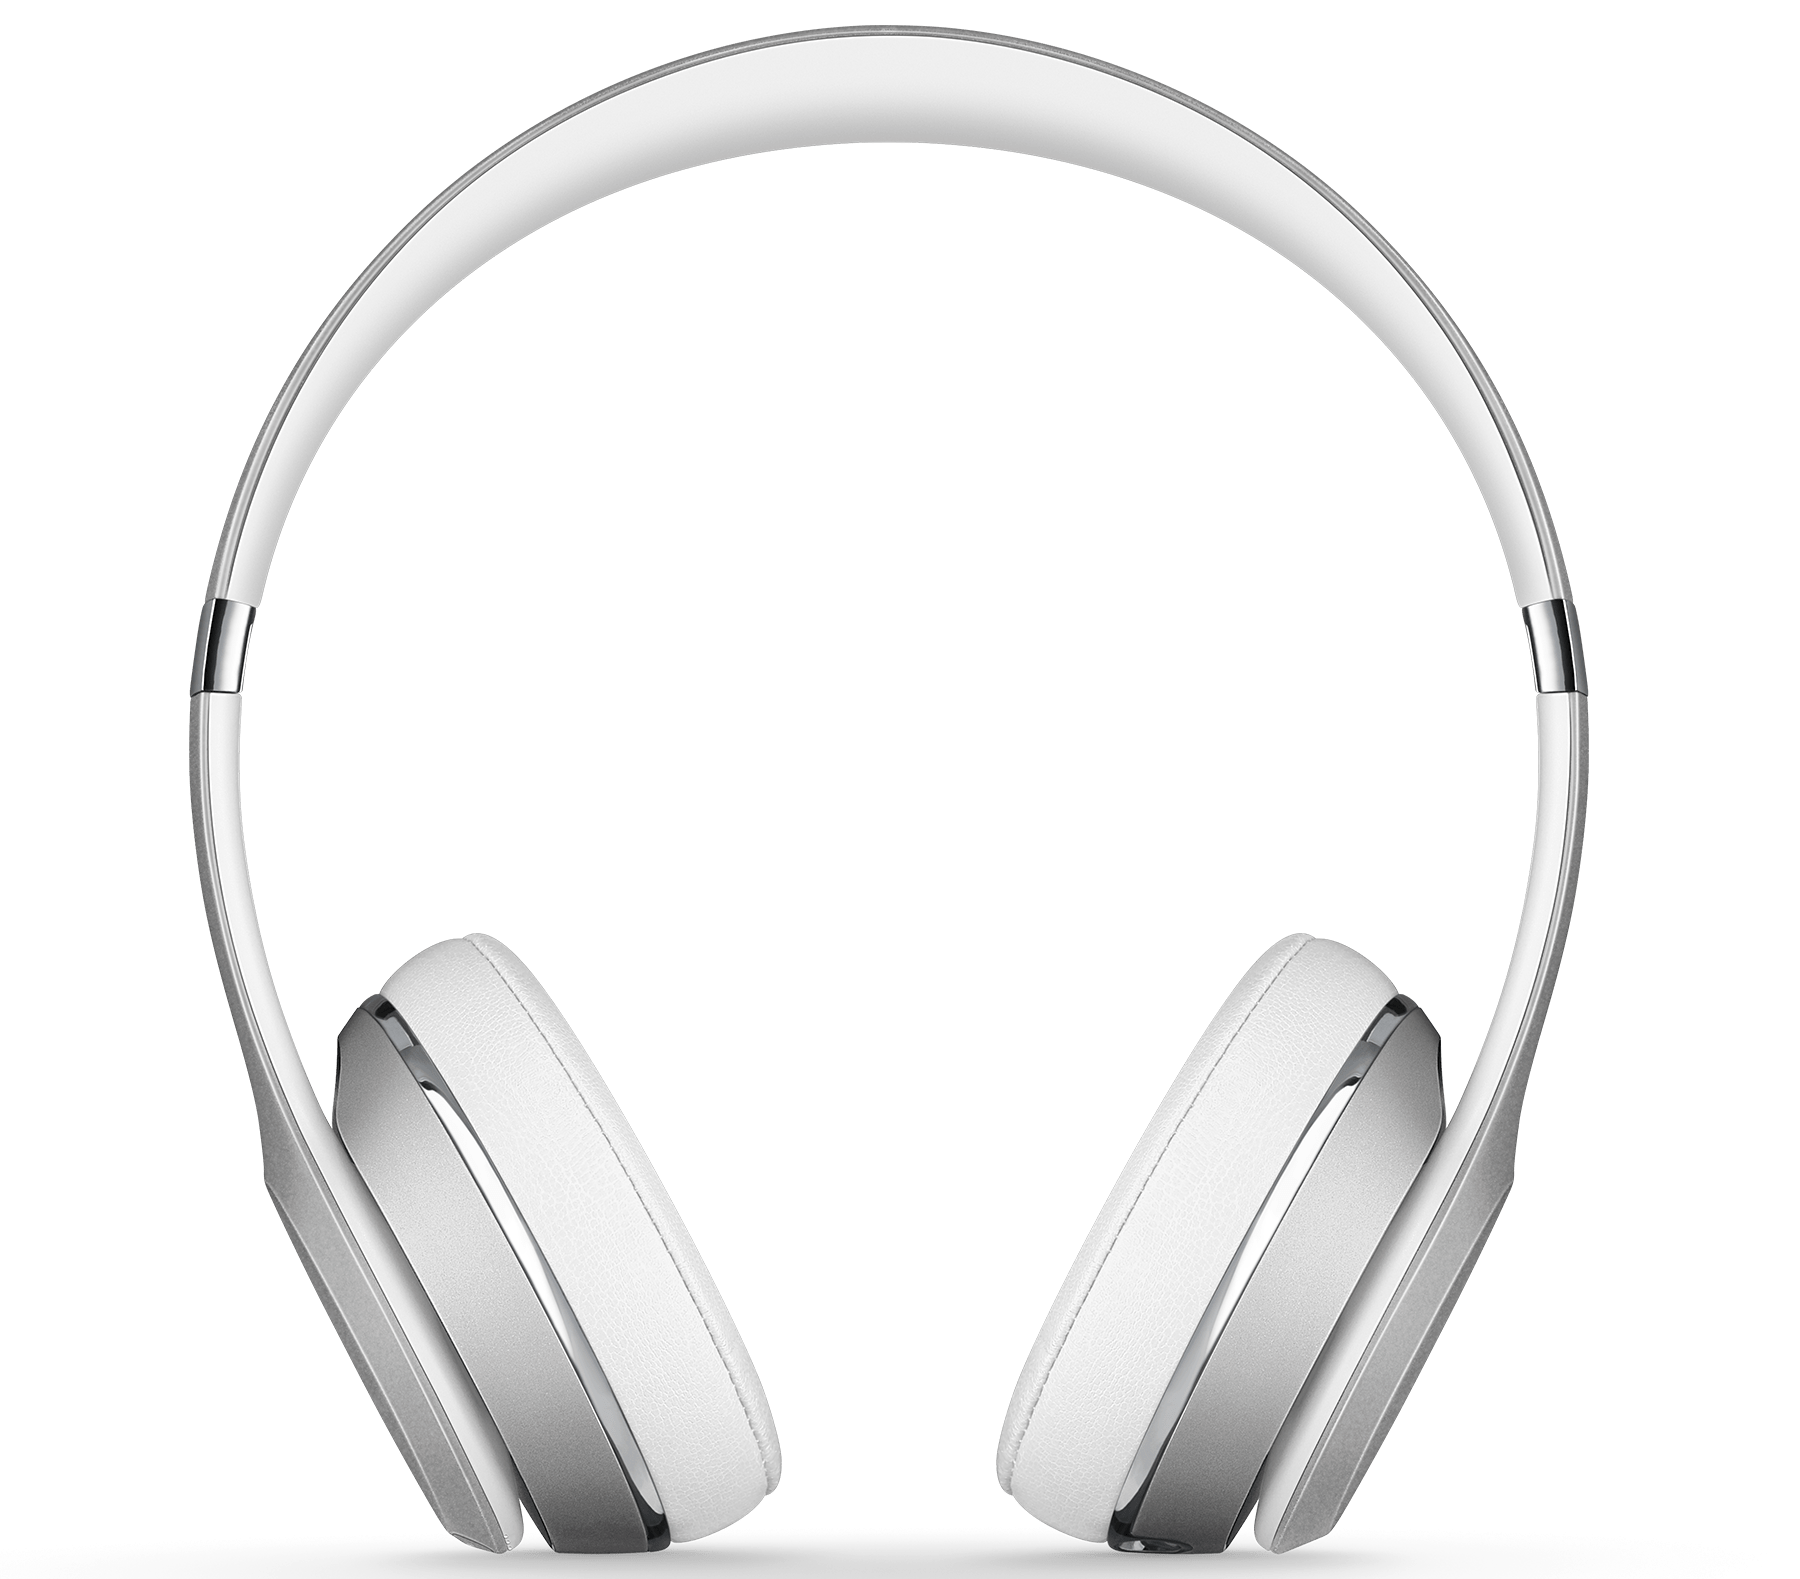  Headphone Beats tersedia dengan harga diskon tahun lalu pada Black Friday.